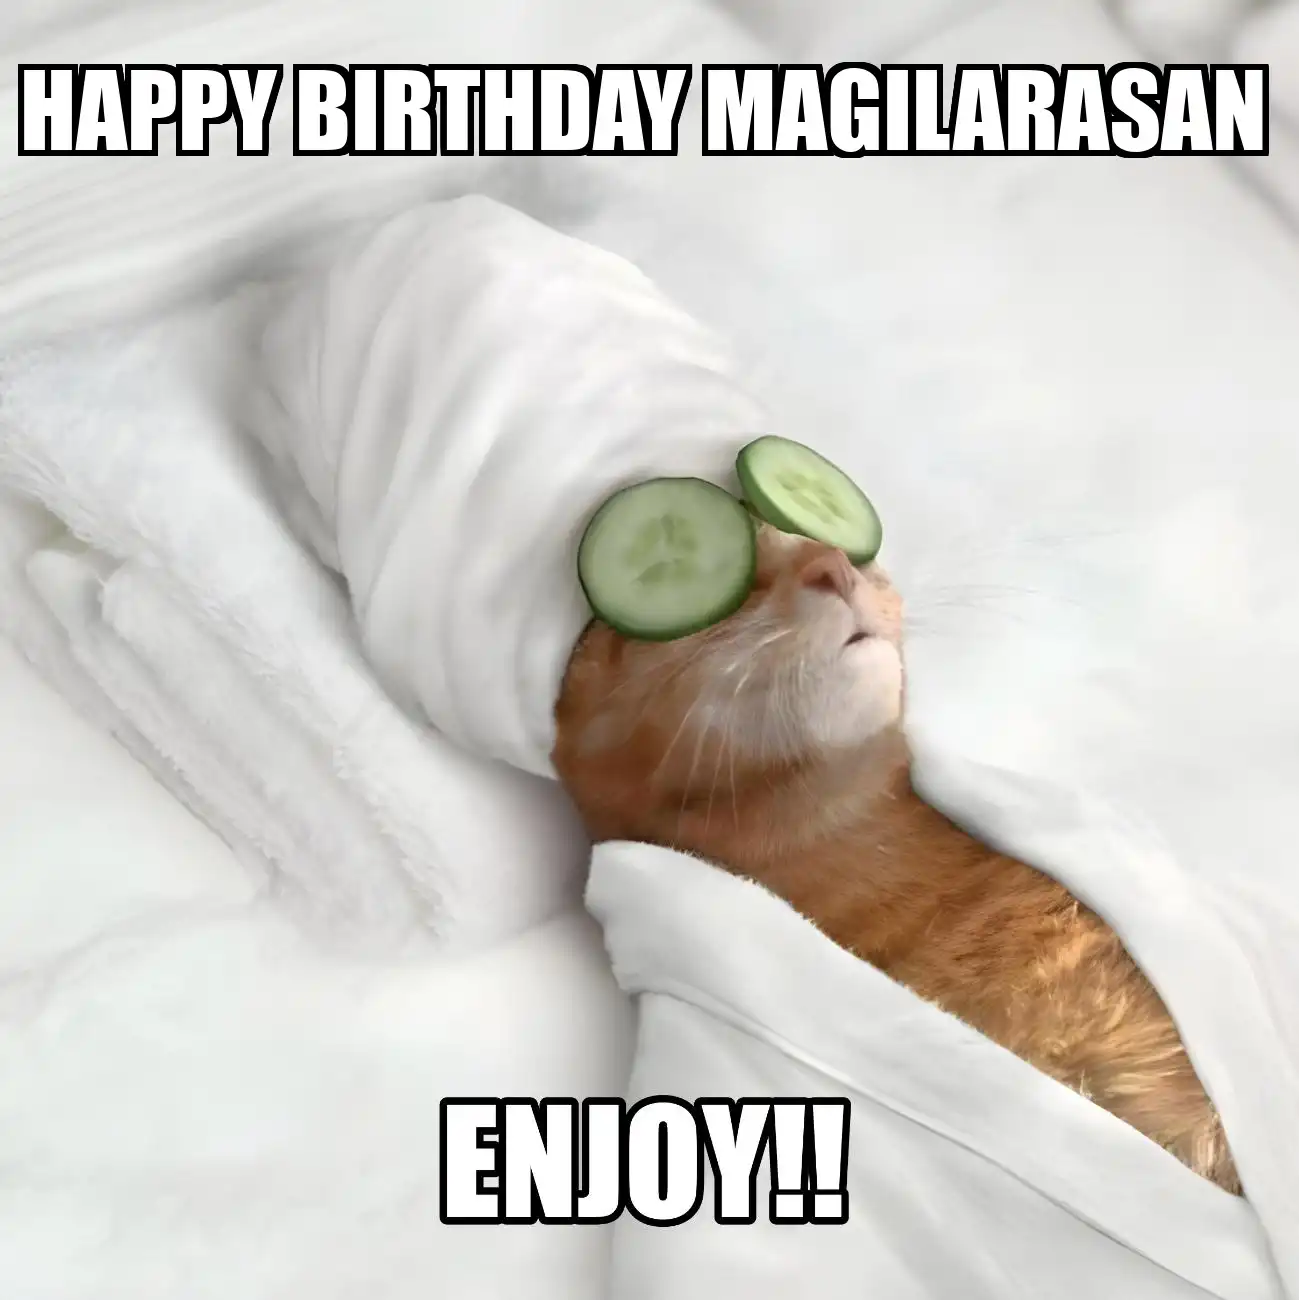 Happy Birthday Magilarasan Enjoy Cat Meme